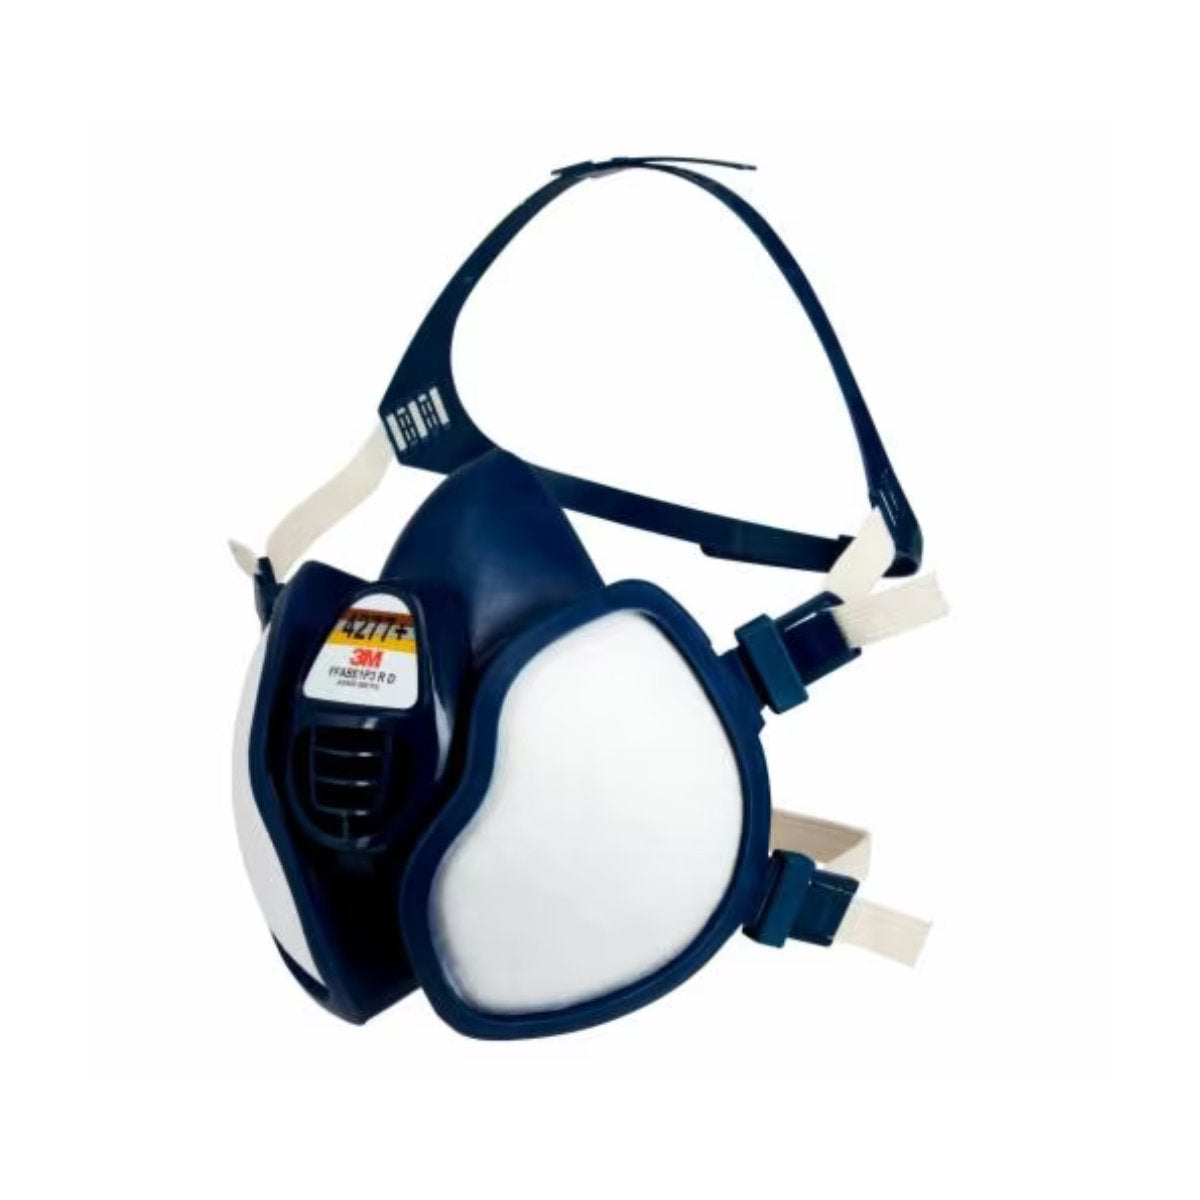 3M™ Disposable Half Face Respirator 4277+, A1B1E1P2 (Each)